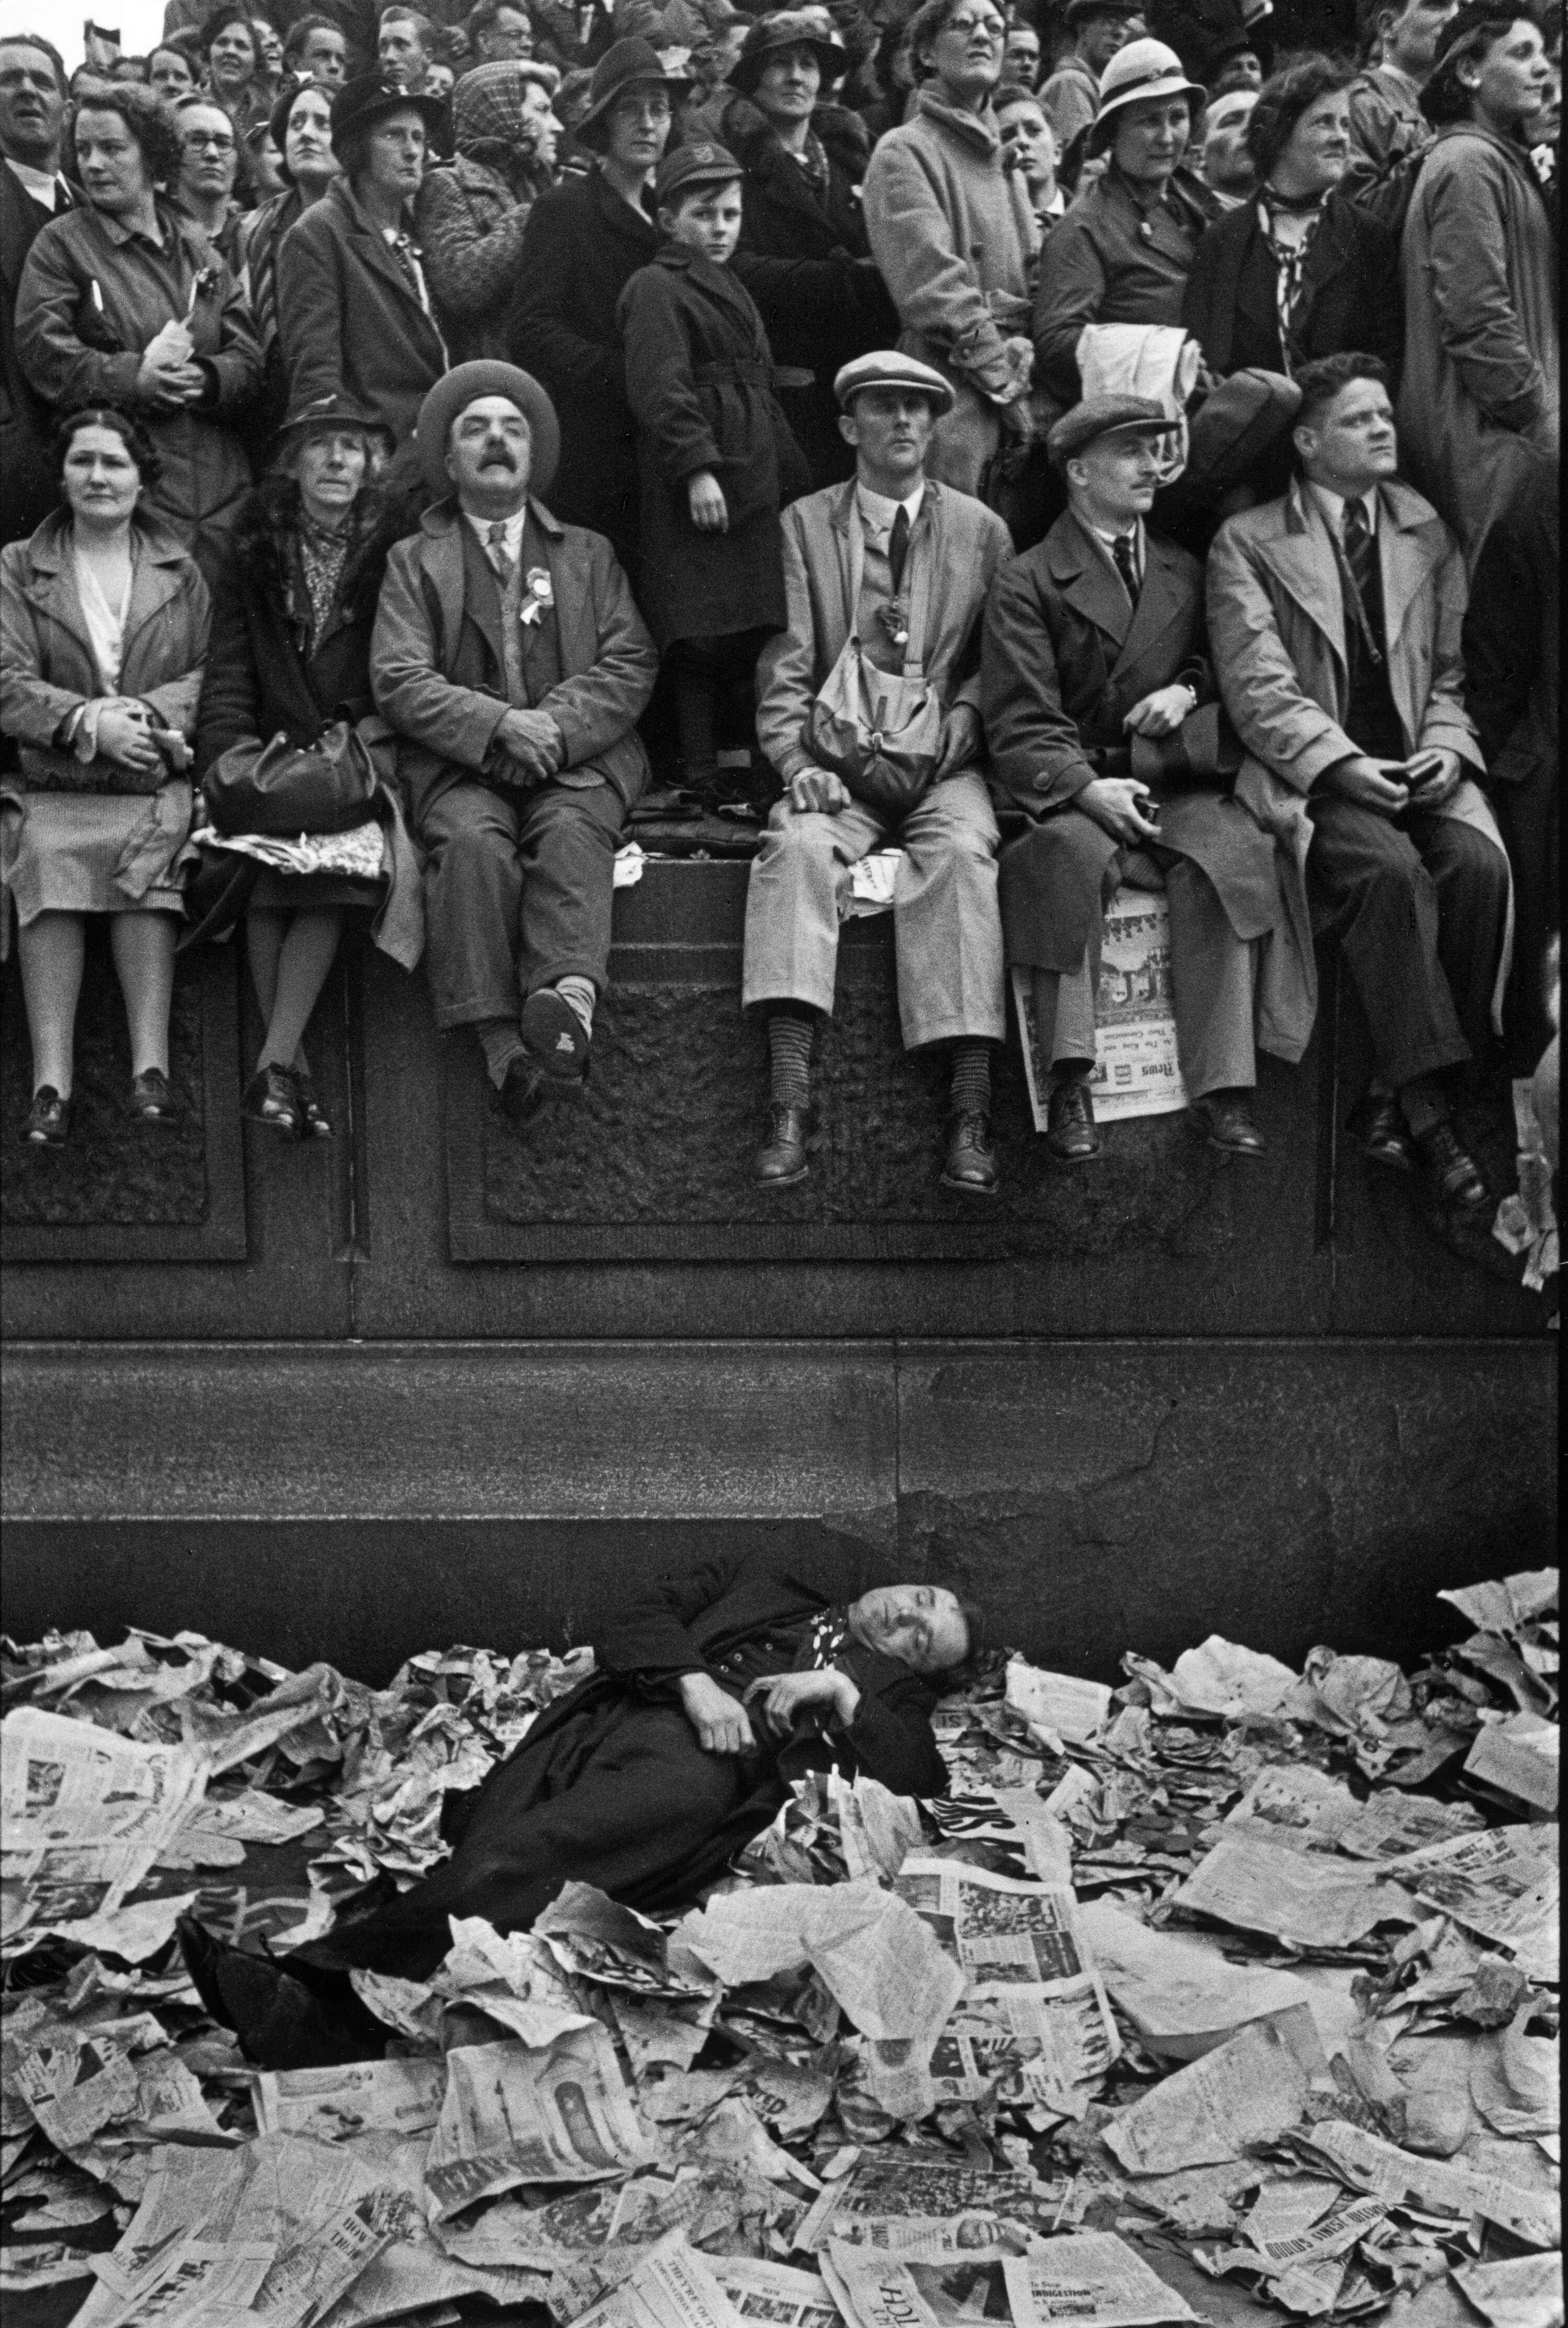 Коронация Георга IV, Лондон, 1937. Некоторые зрители уснули после длительного ожидания. Фотограф Анри Картье-Брессон